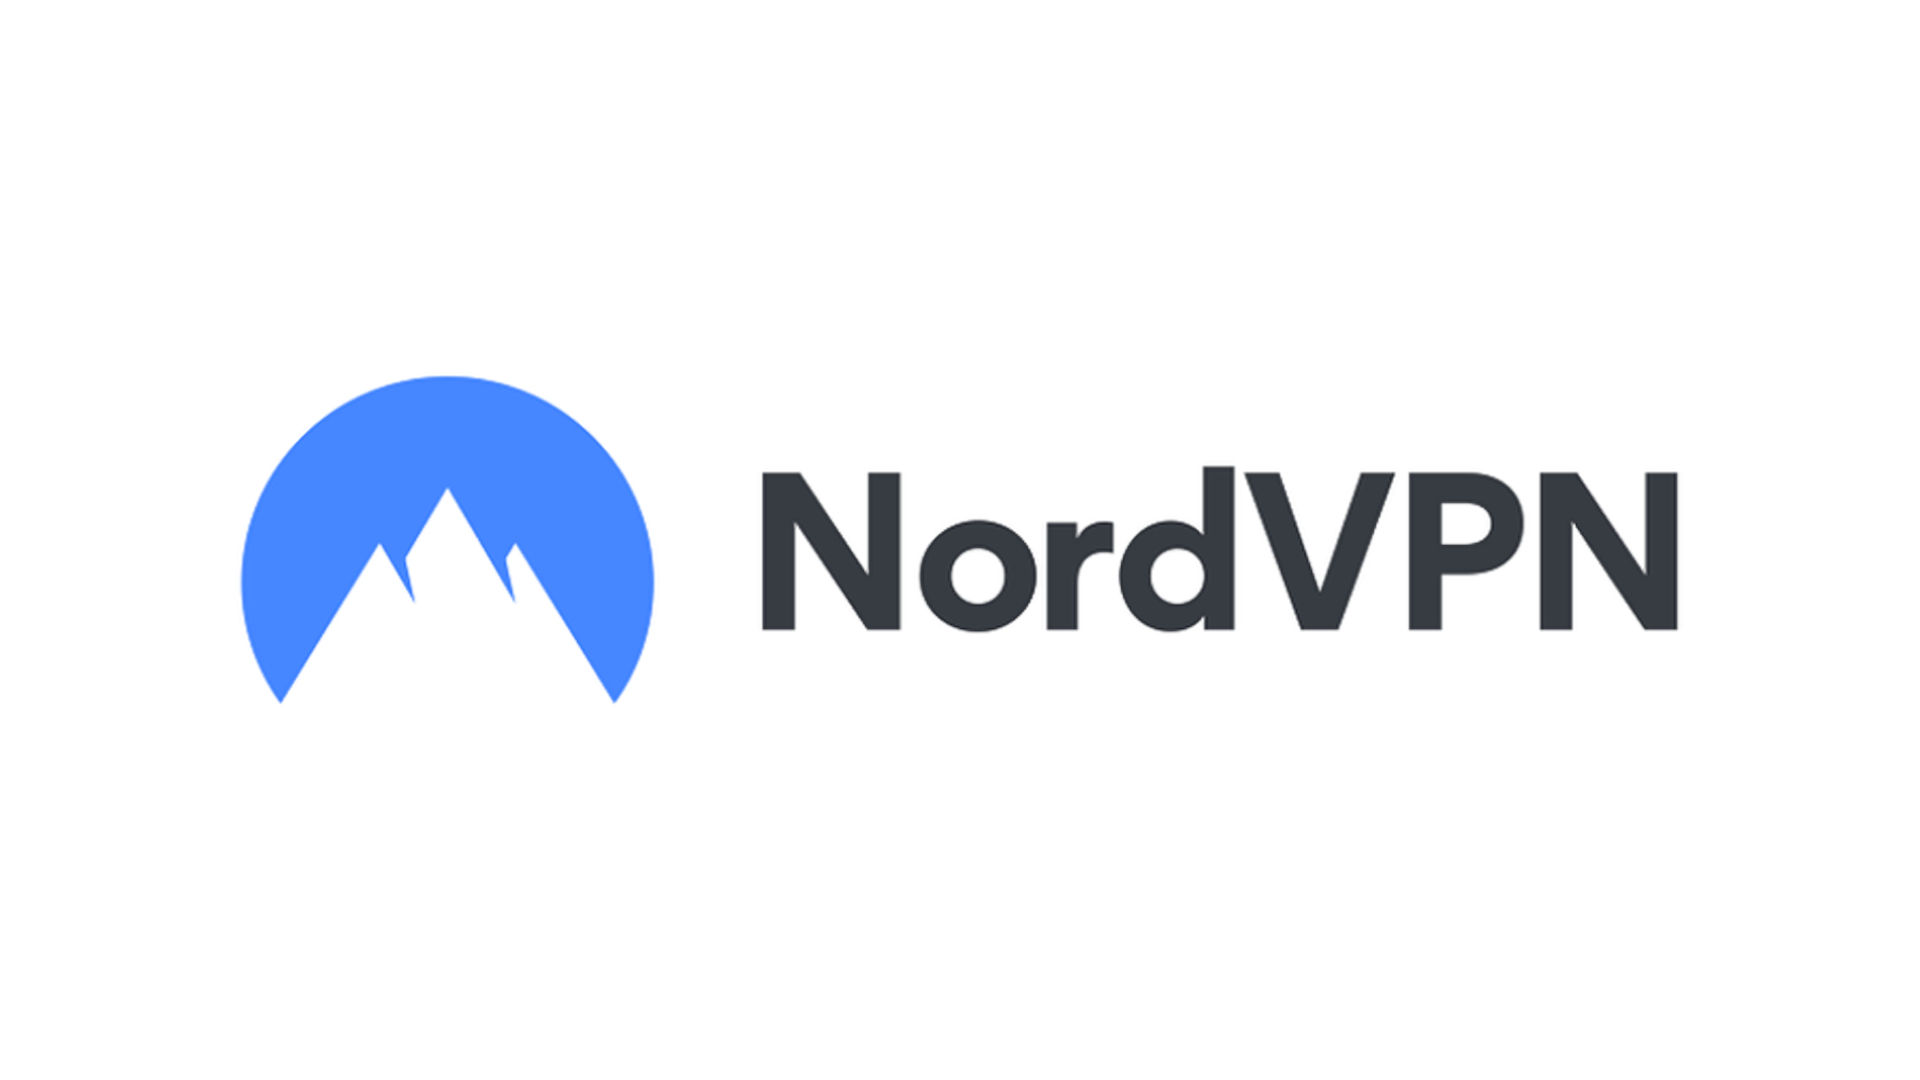 Nejlepší mobilní VPN, číslo číslo 3. Obrázek zobrazuje logo NordVPN